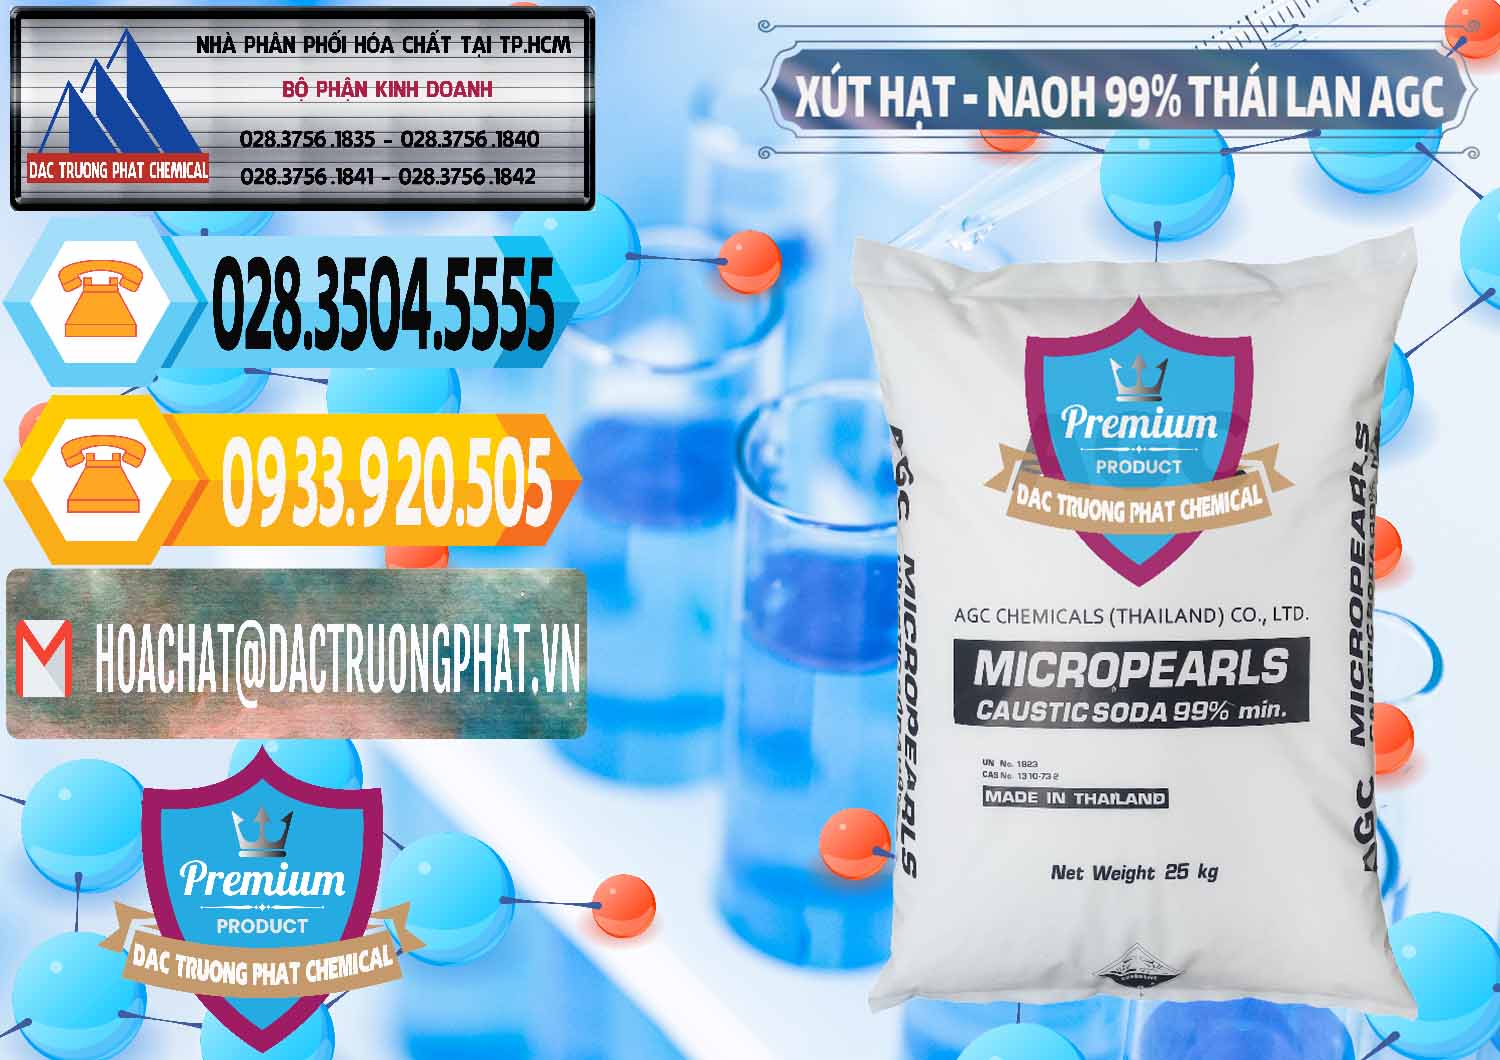 Chuyên bán _ phân phối Xút Hạt - NaOH Bột 99% AGC Thái Lan - 0168 - Đơn vị chuyên phân phối & bán hóa chất tại TP.HCM - hoachattayrua.net